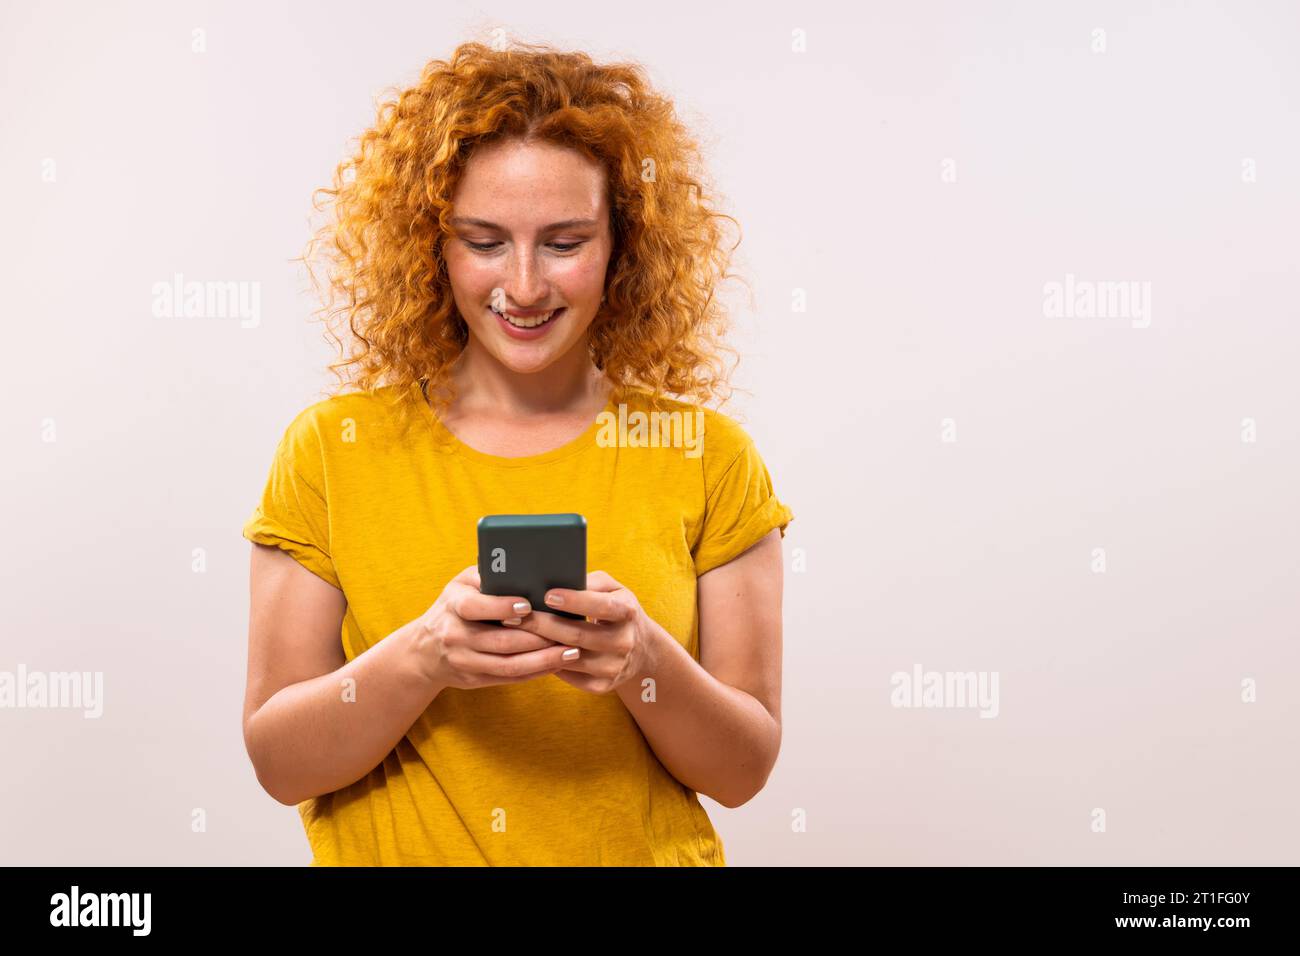 Image de femme heureuse de gingembre utilisant le téléphone. Banque D'Images